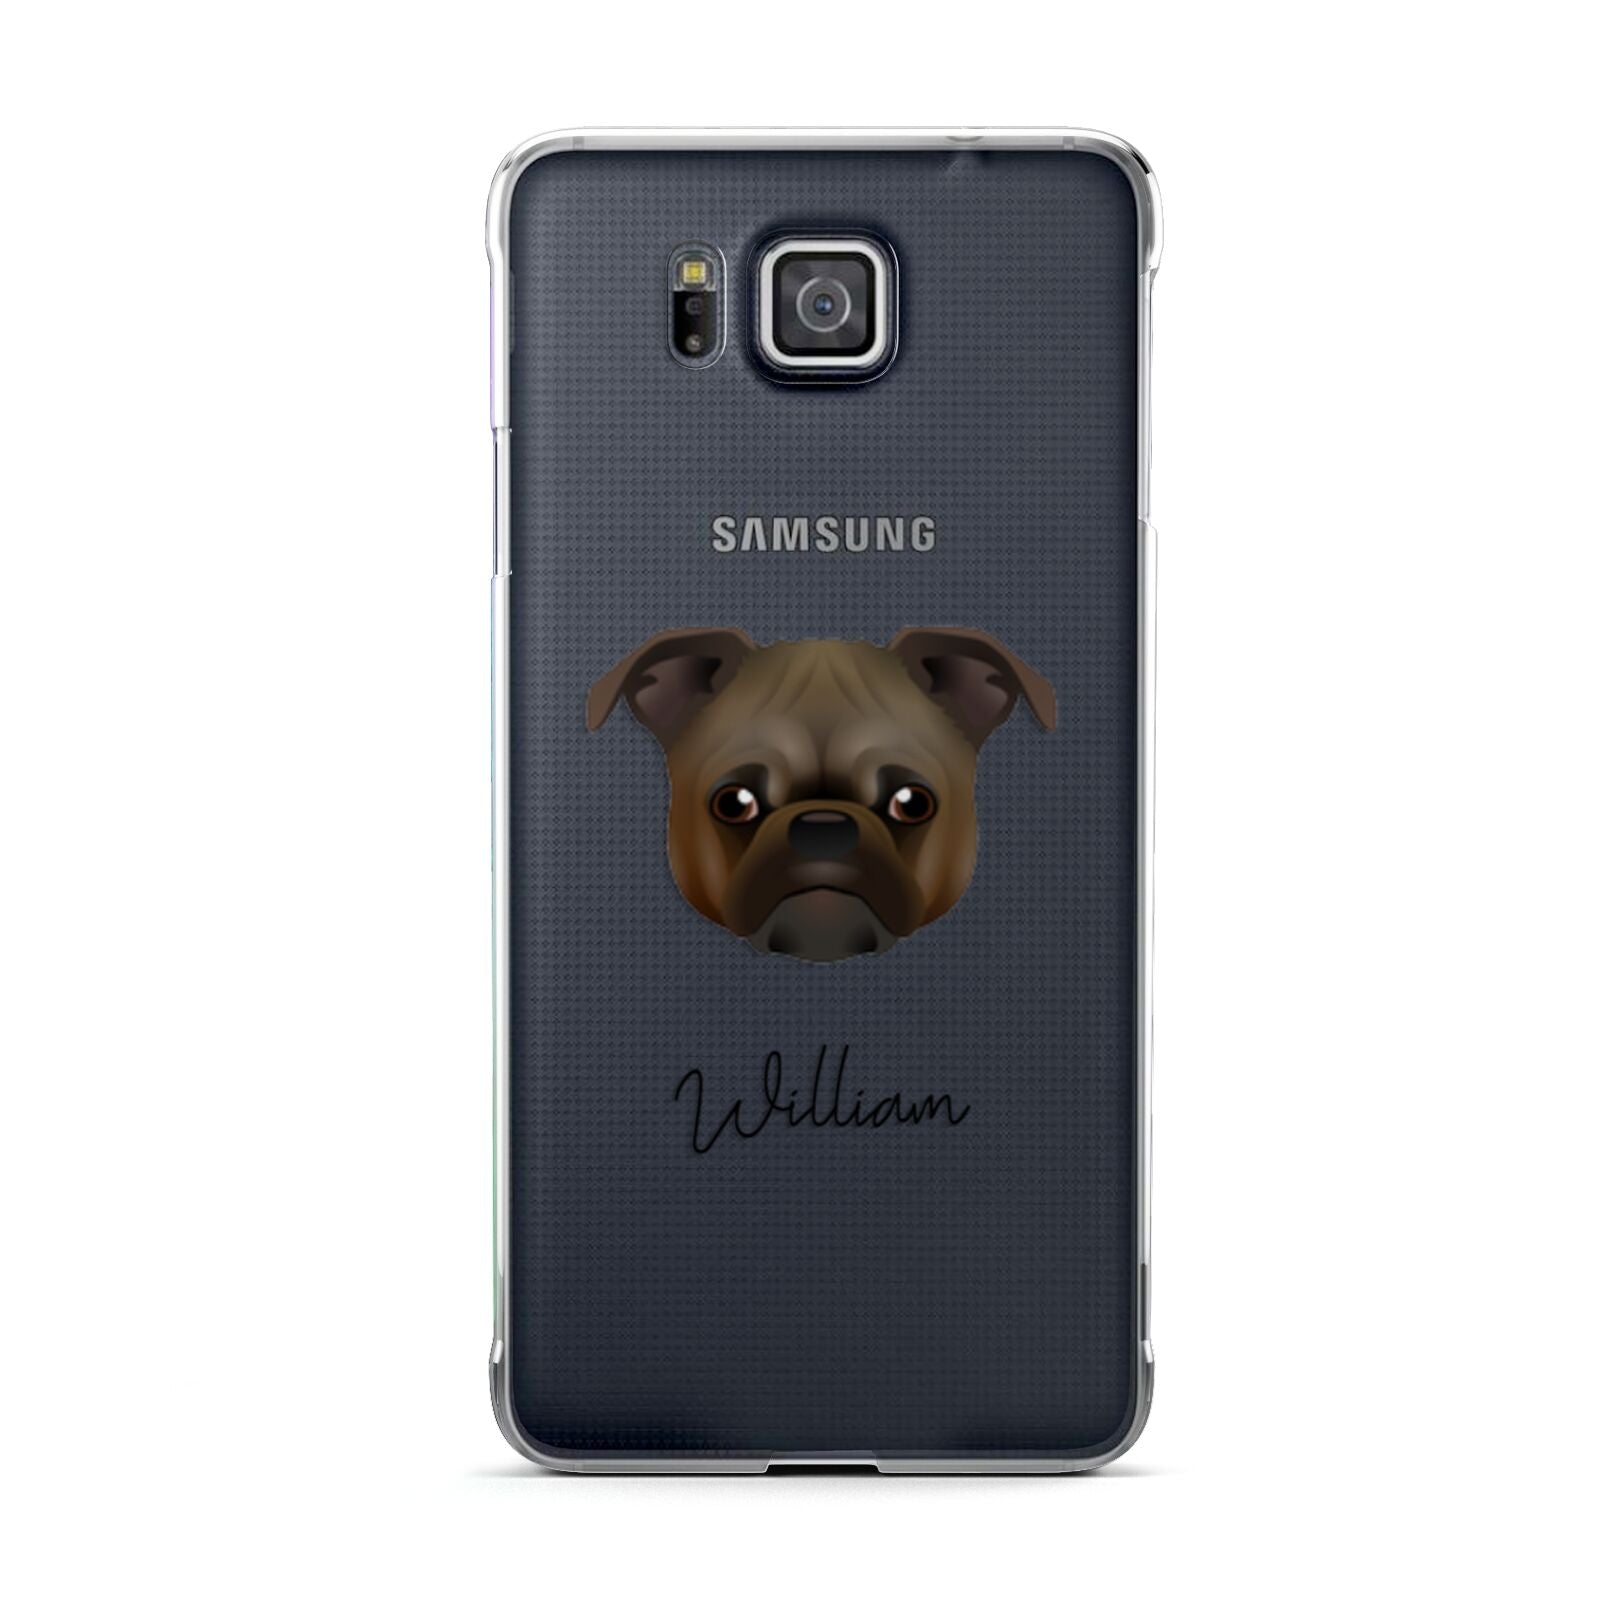 Chug Personalised Samsung Galaxy Alpha Case